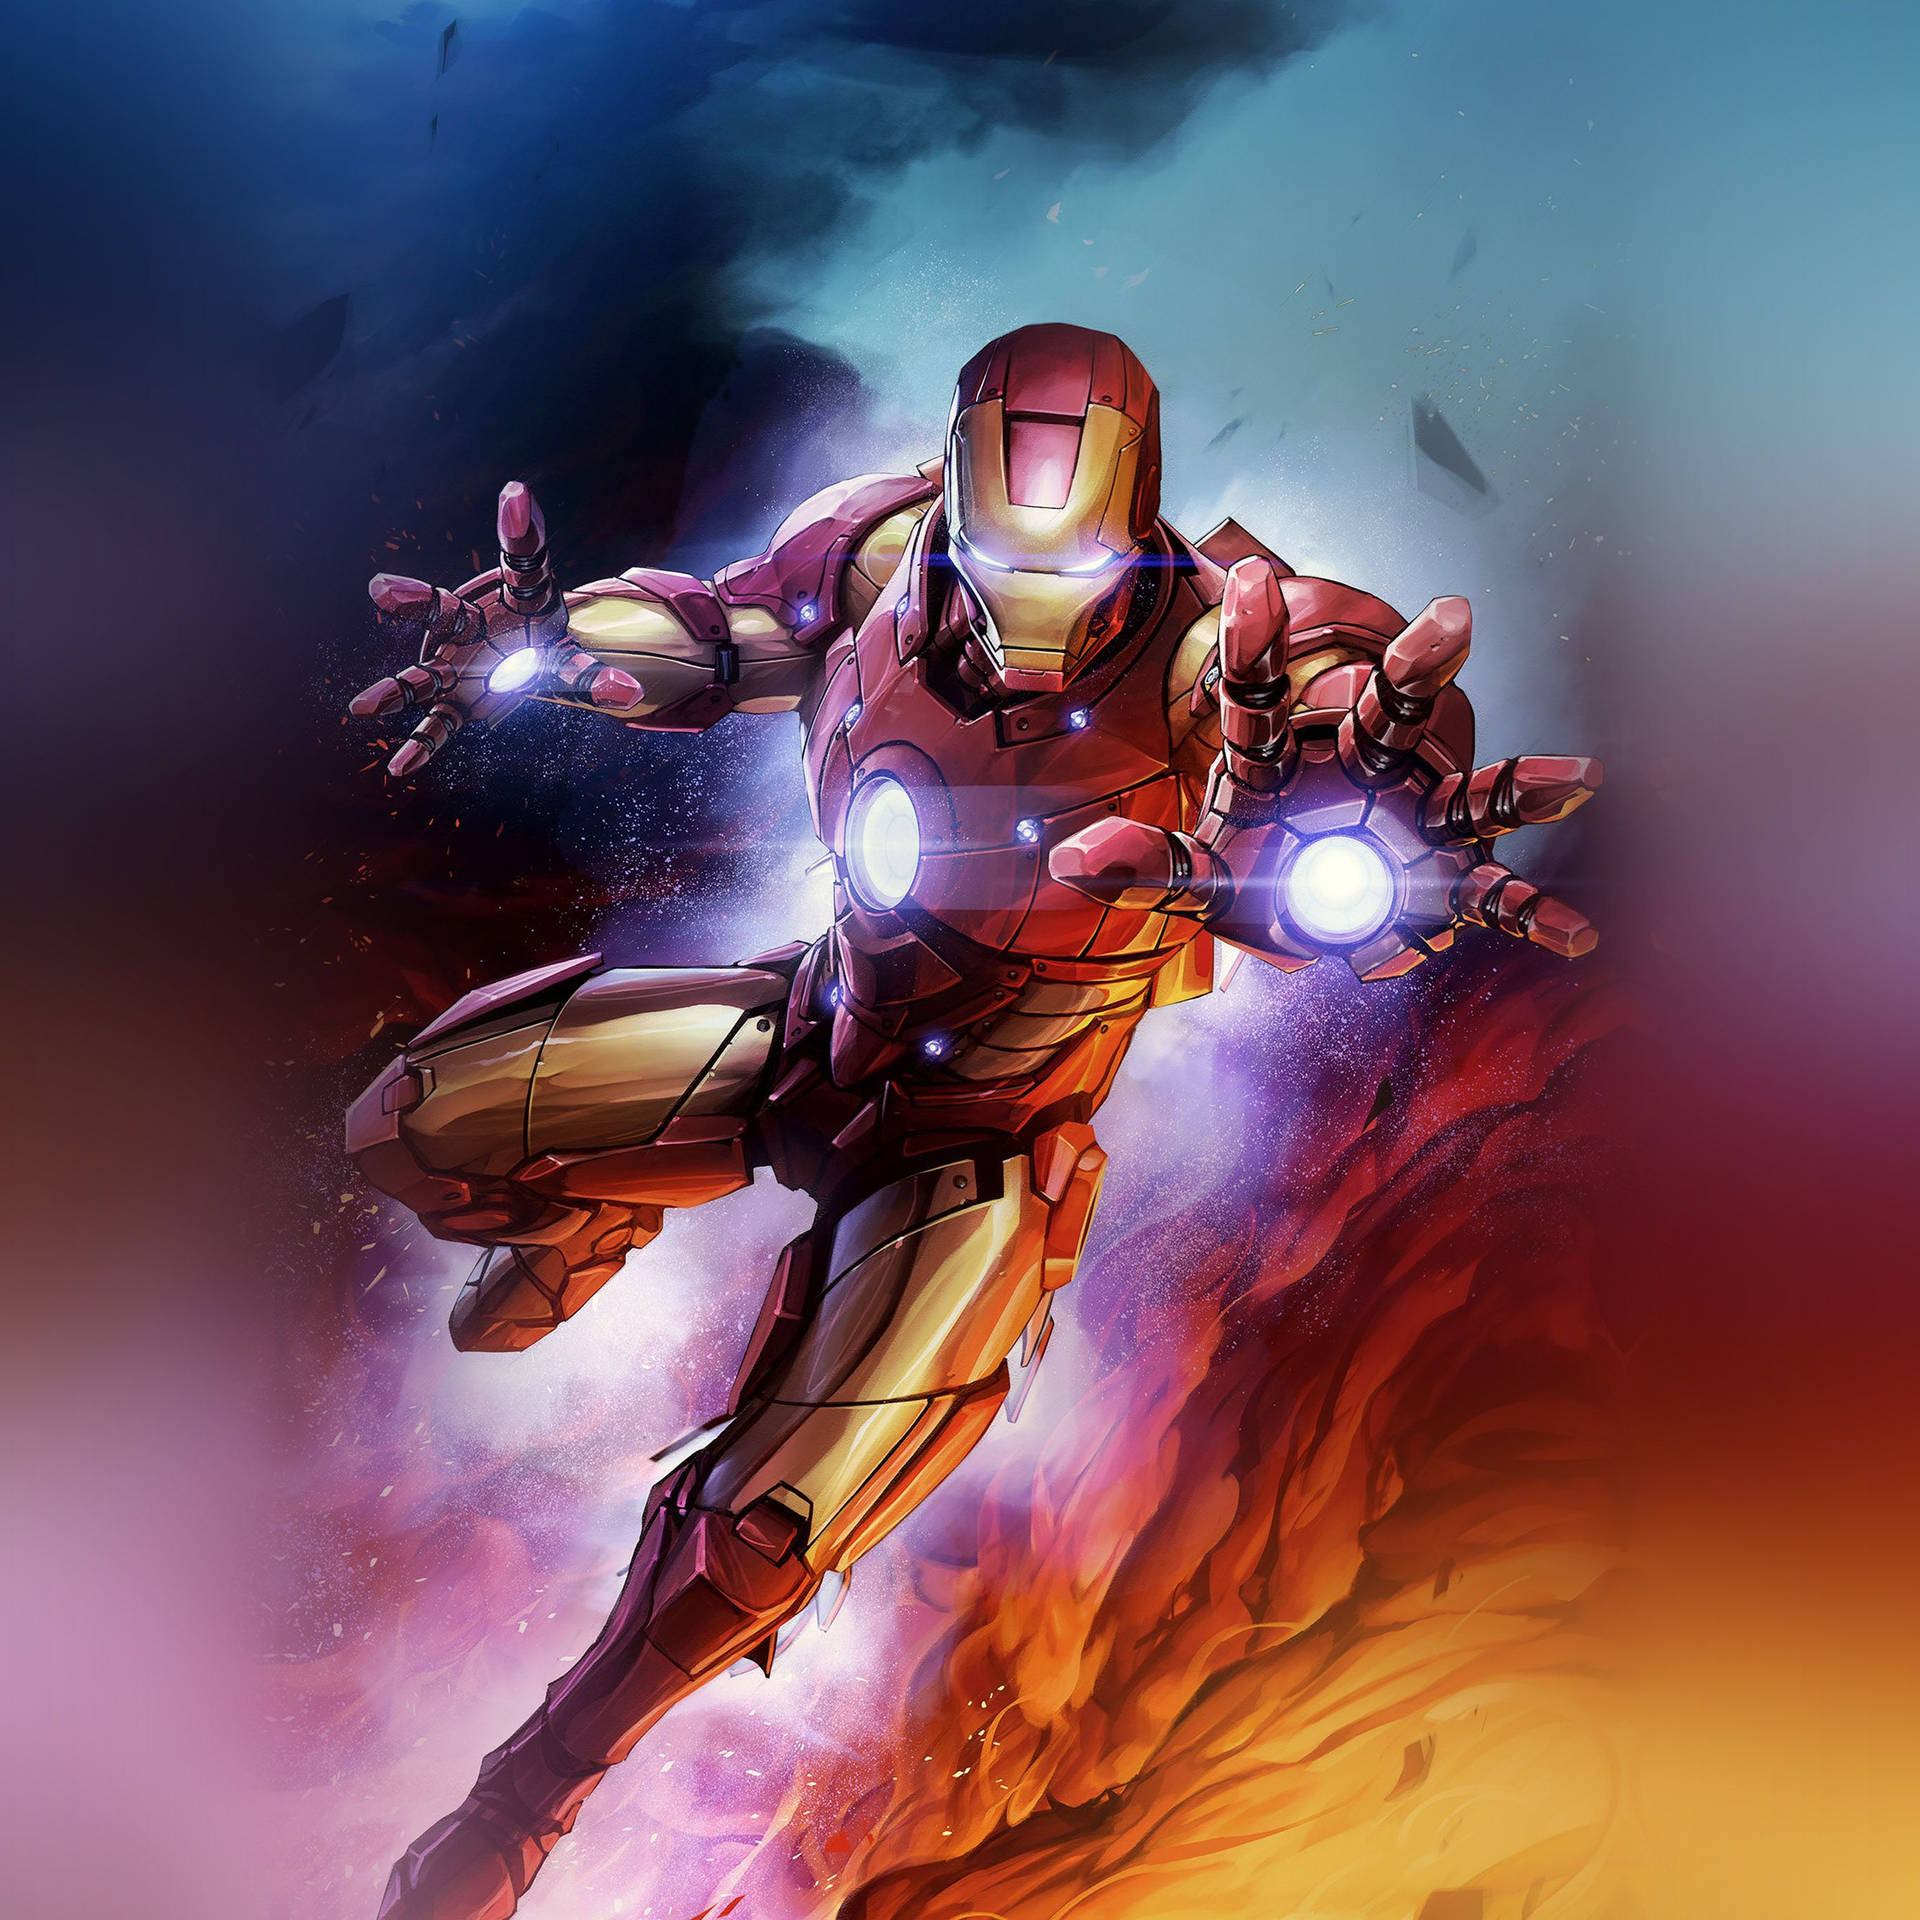 Fenomenalkonstverk Av Iron Man Superhjälten. Wallpaper